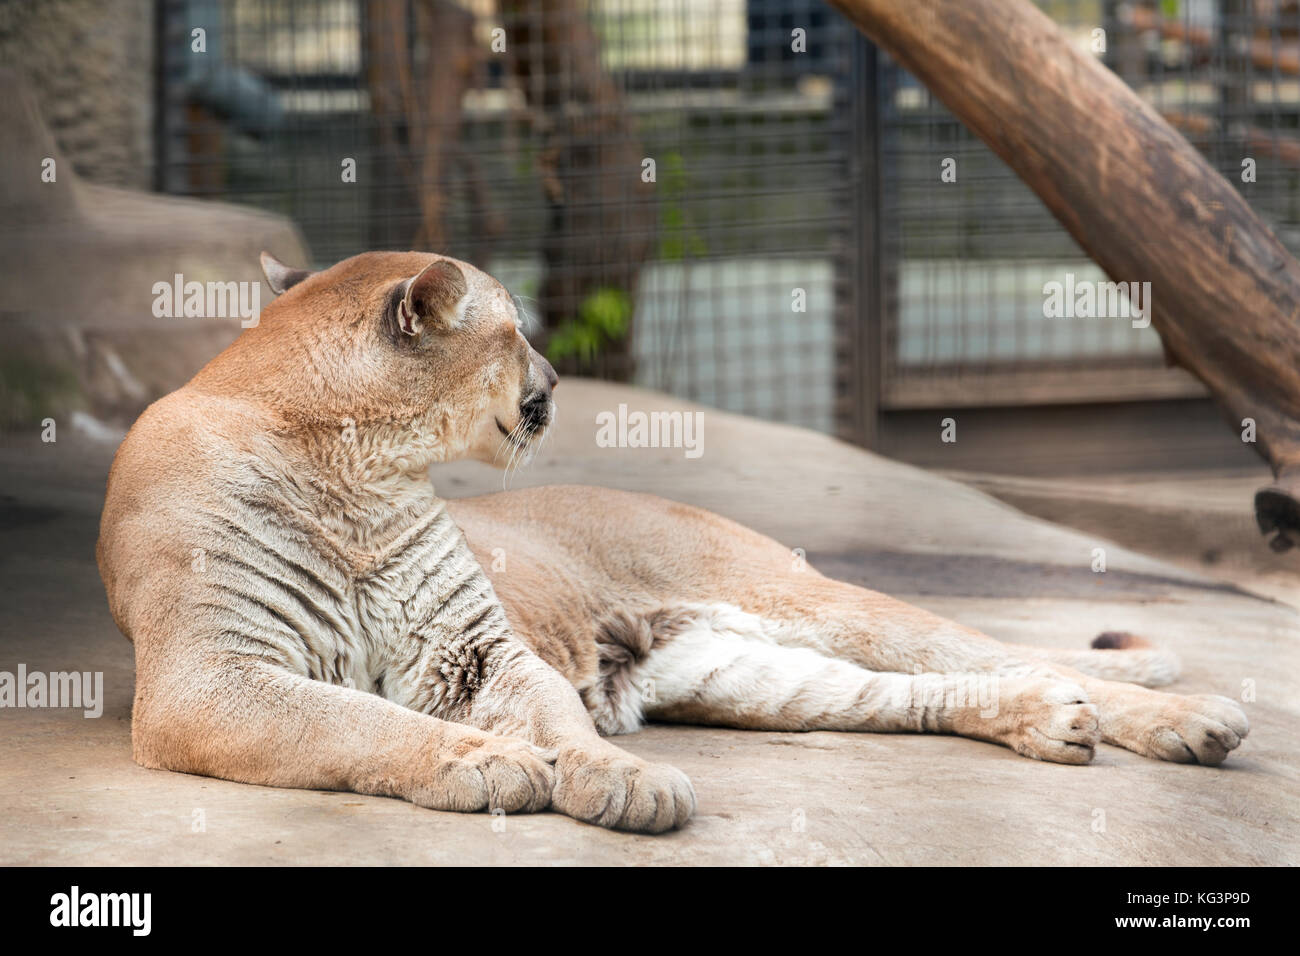 Puma im Zoo. Die puma liegt auf einem Stein und sieht aus der Ferne, in der  Kopf gedreht. Auf einem Hintergrund käfig Stangen Stockfotografie - Alamy